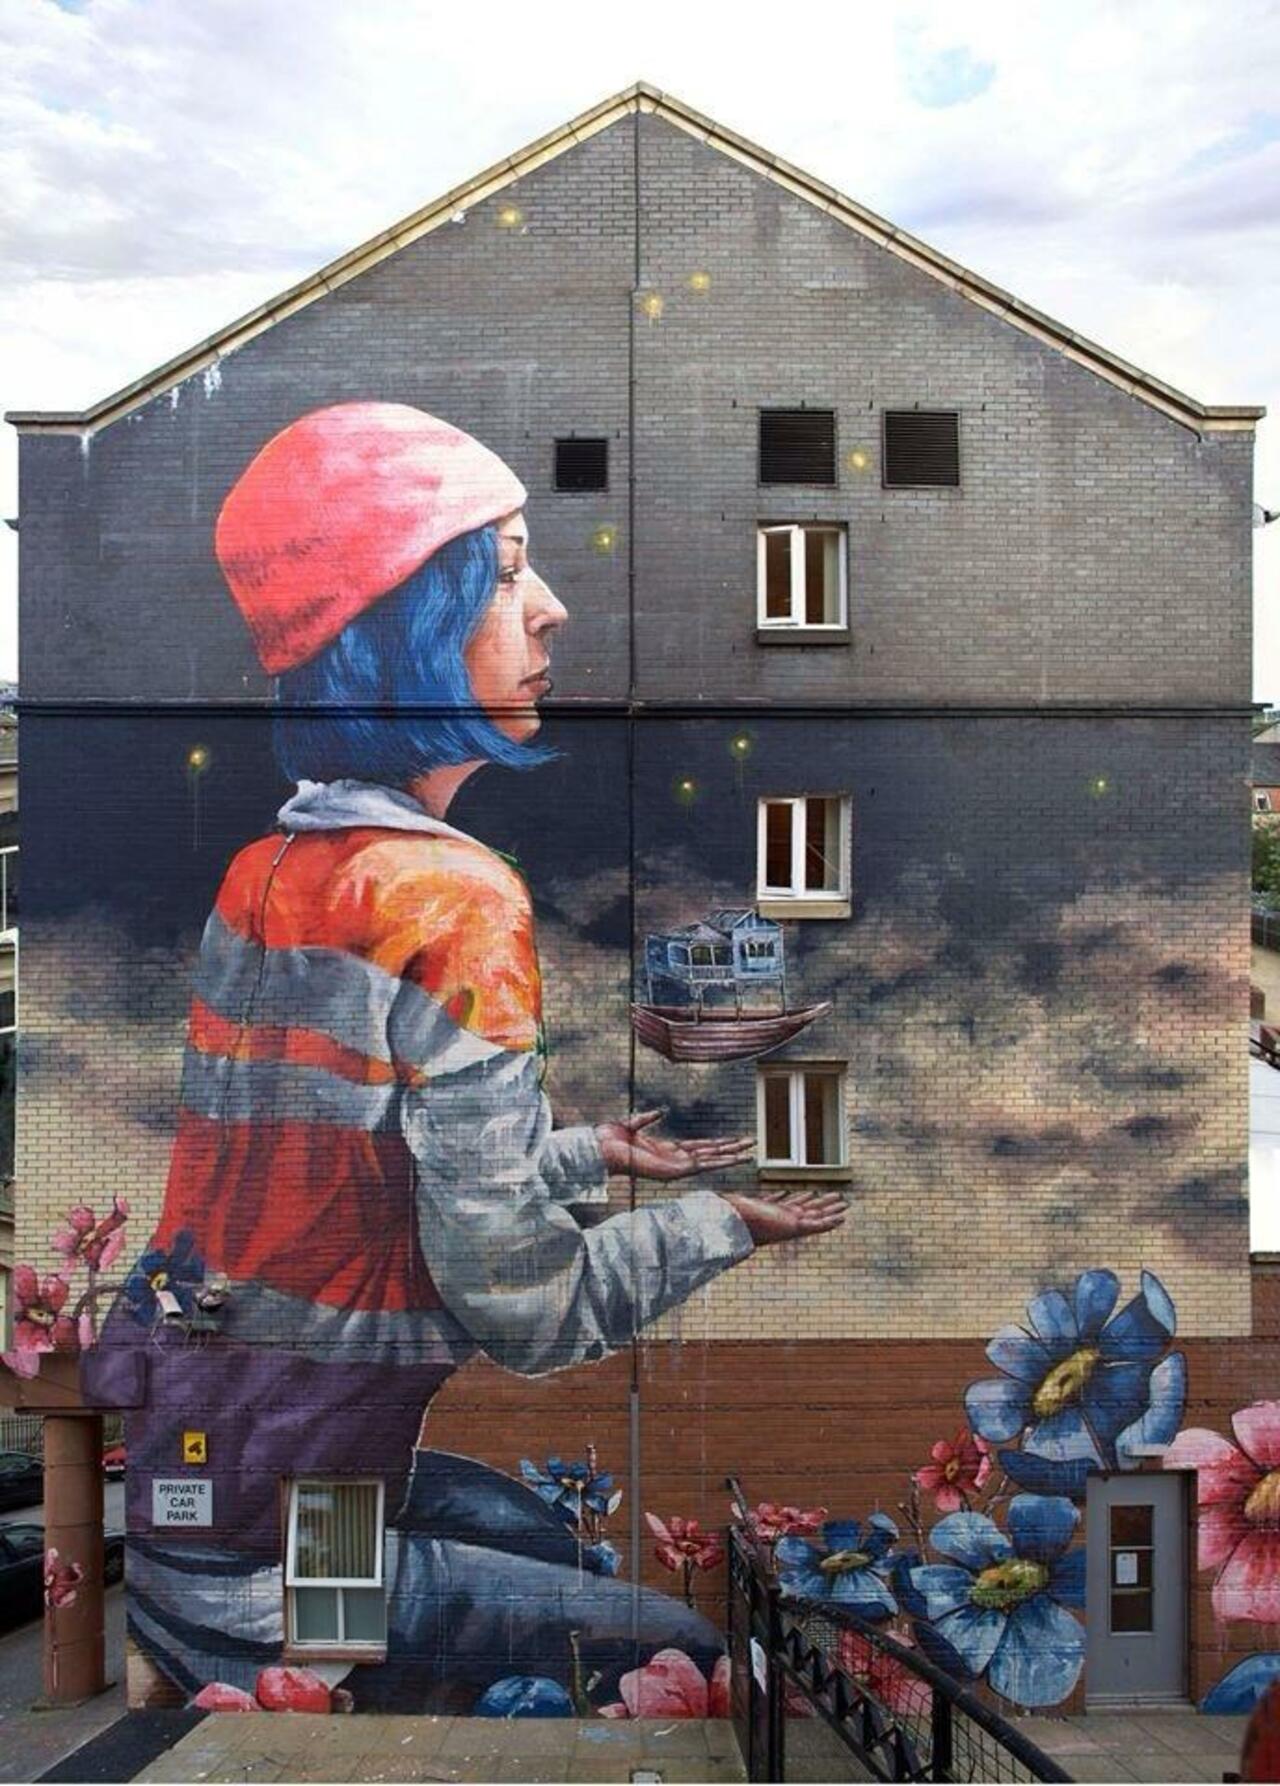 Artist Fintan McGee new wonderful Street Art mural in Glasgow, Scotland #art #mural #graffiti #streetart http://t.co/cnByRTbUnN